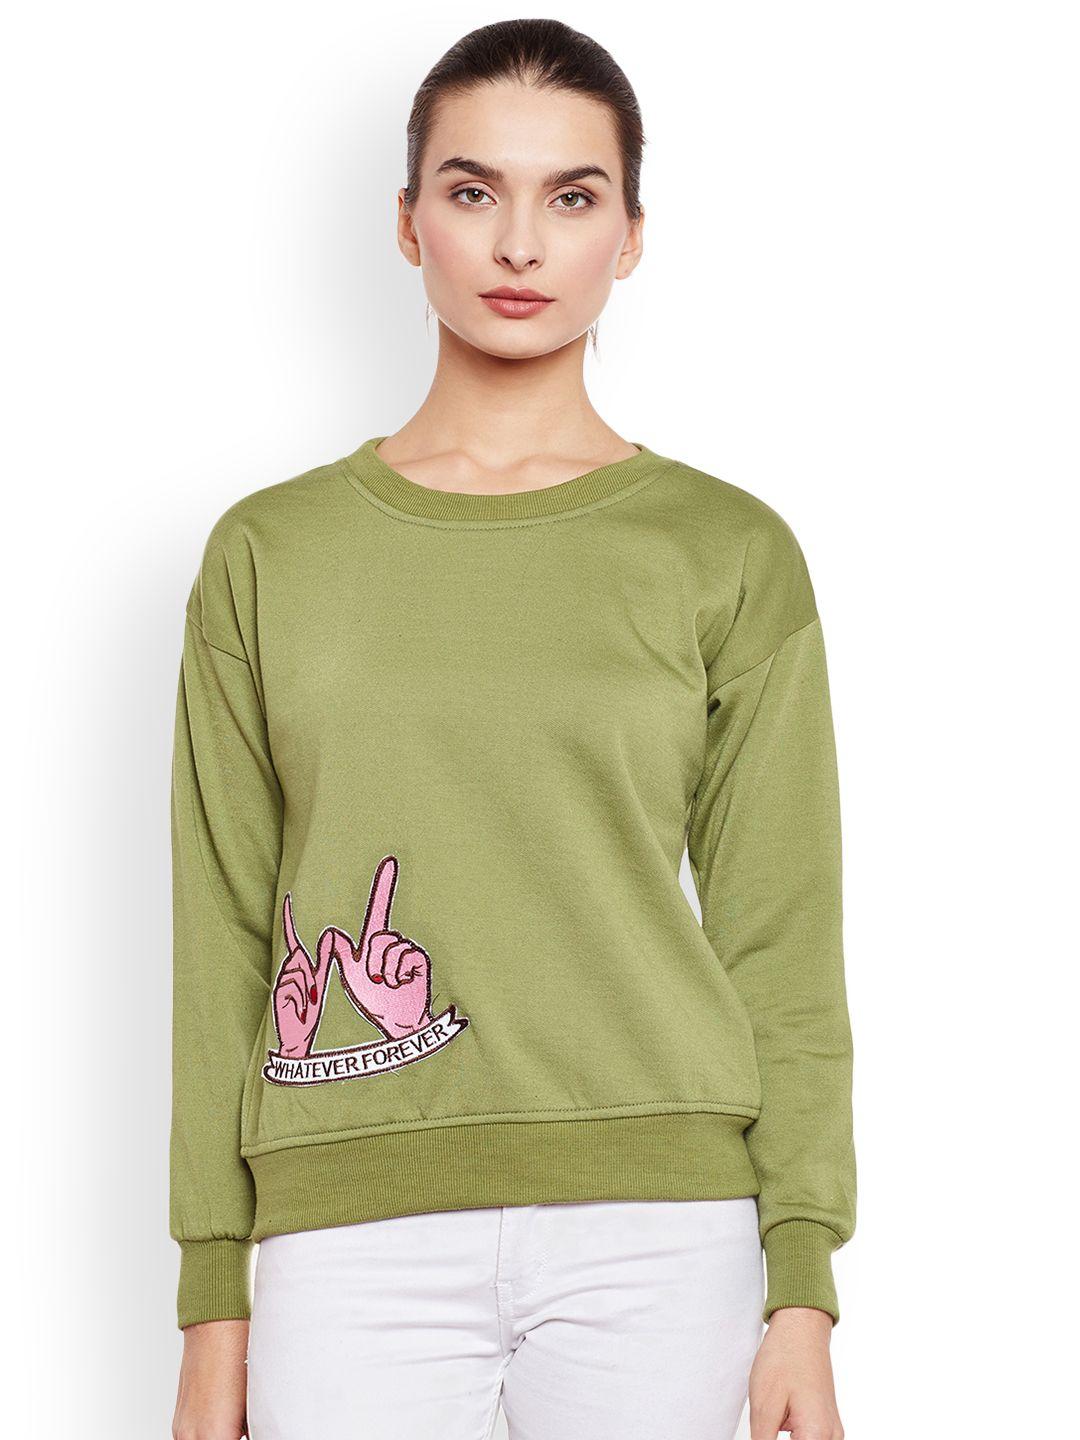 belle-fille-women-olive-green-solid-sweatshirt